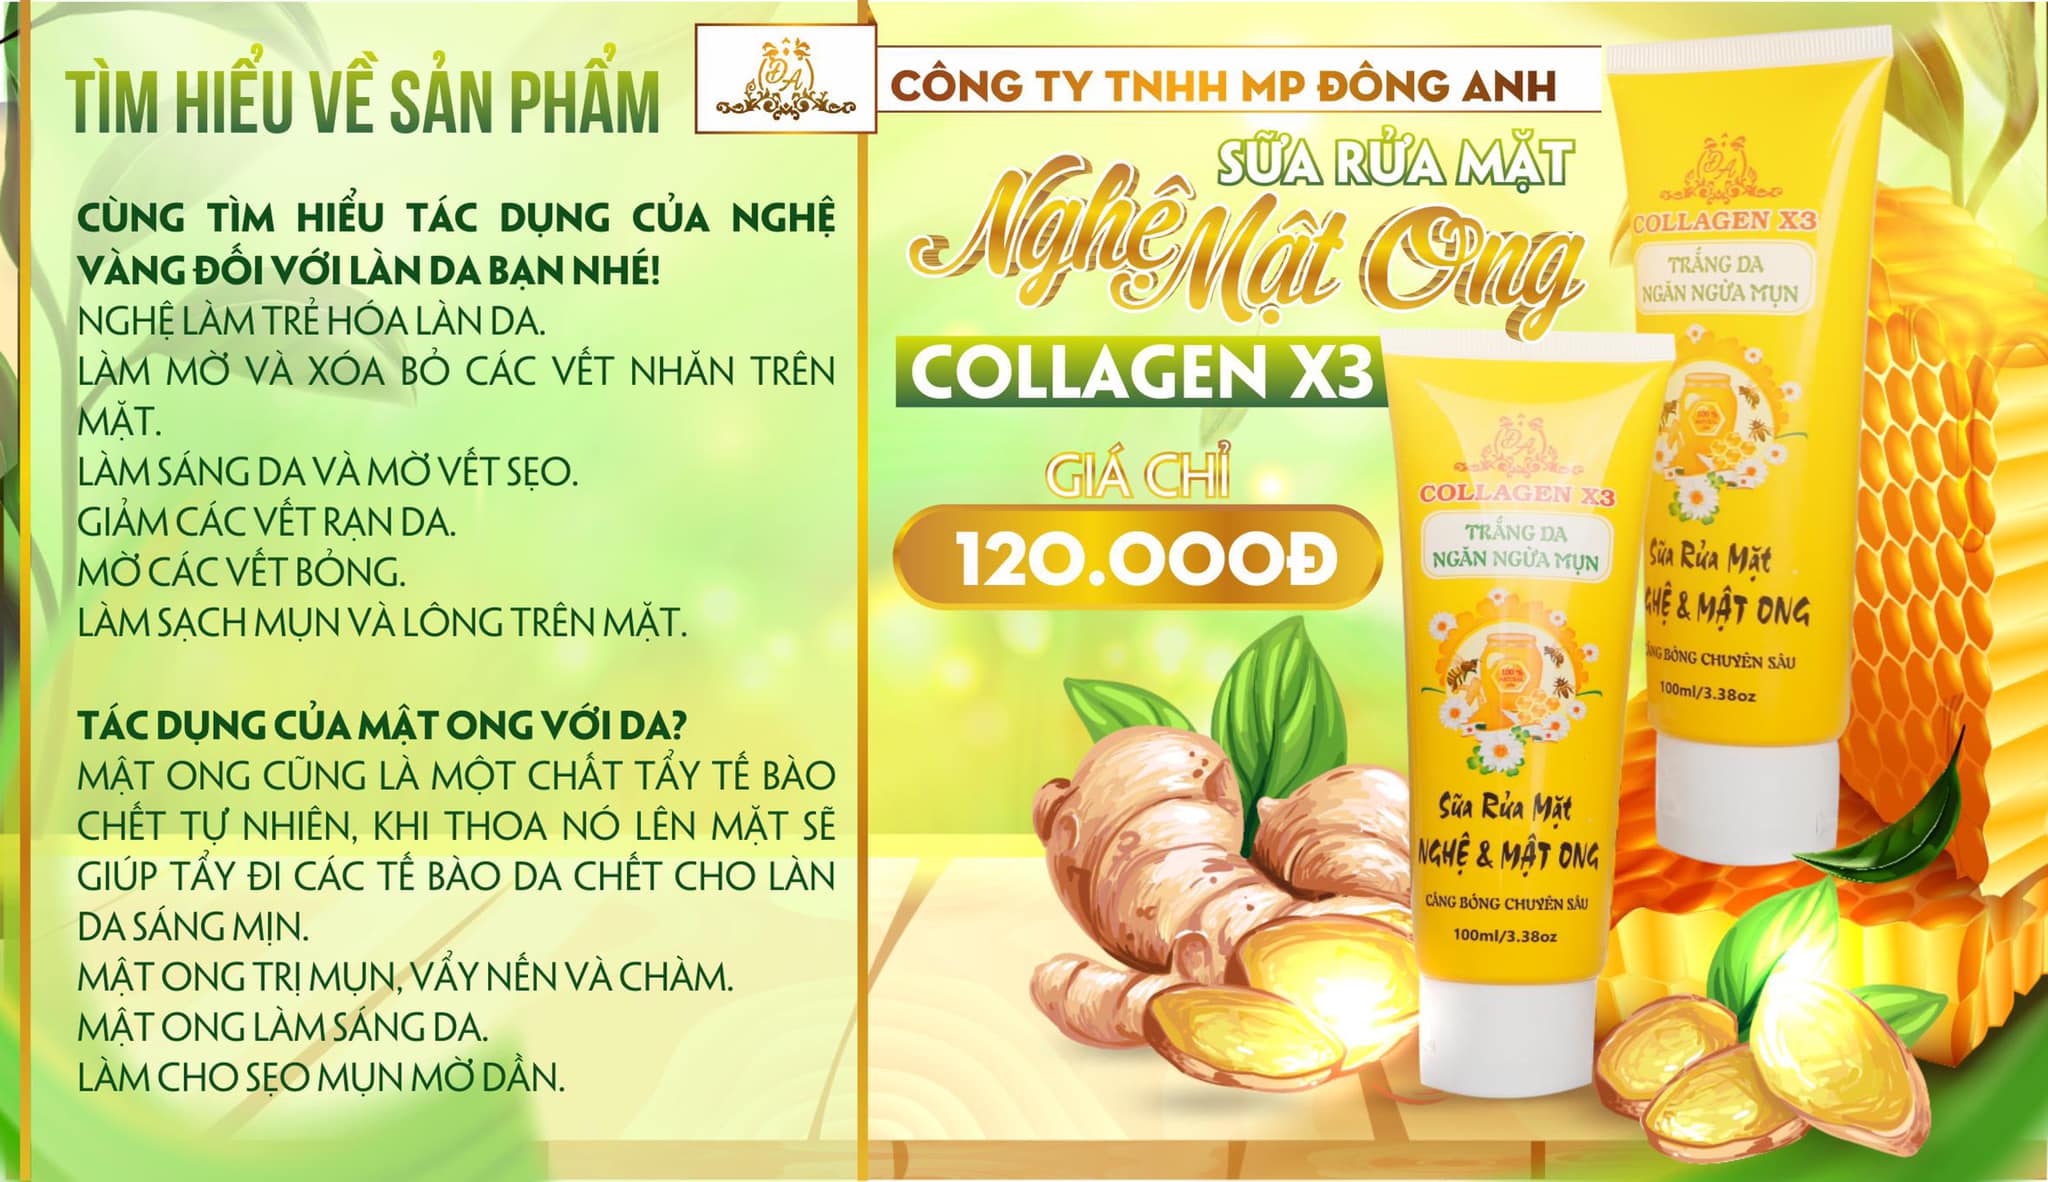 Sữa rửa mặt nghệ mật ong Collagen x3